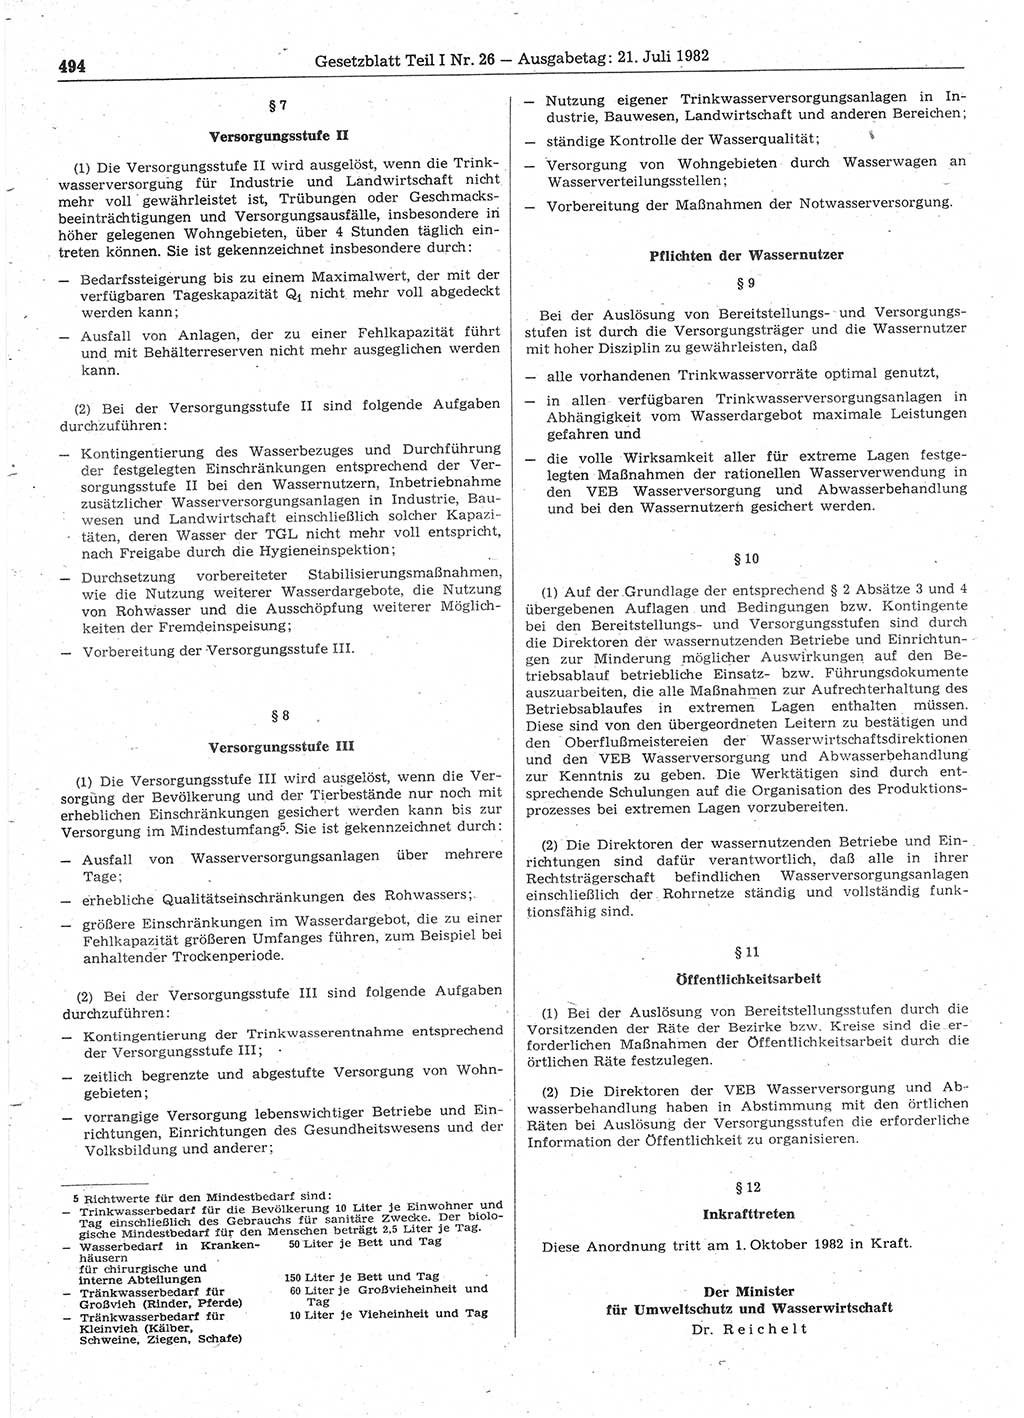 Gesetzblatt (GBl.) der Deutschen Demokratischen Republik (DDR) Teil Ⅰ 1982, Seite 494 (GBl. DDR Ⅰ 1982, S. 494)